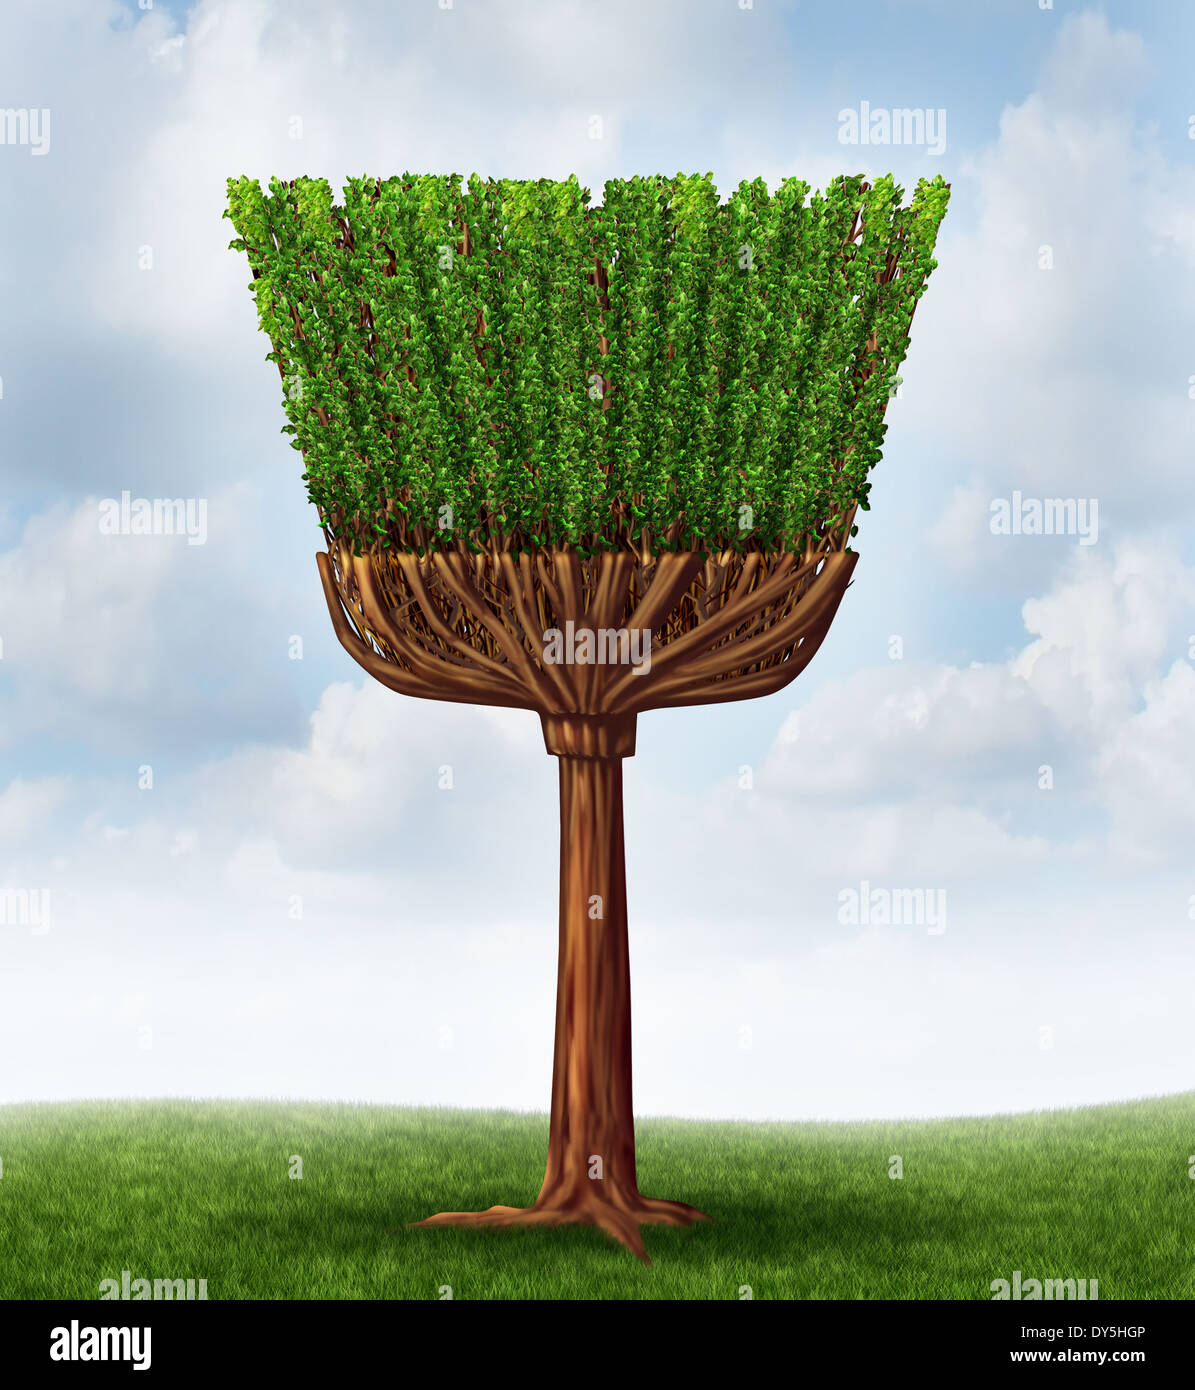 Concept de nettoyage de ressort avec un arbre et des feuilles en forme d'un balai et manipuler comme un symbole d'un service ou d'entretien pour nettoyer les corvées et balayer la poussière dans une maison ou purifier l'air dans l'environnement par un processus naturel. Banque D'Images